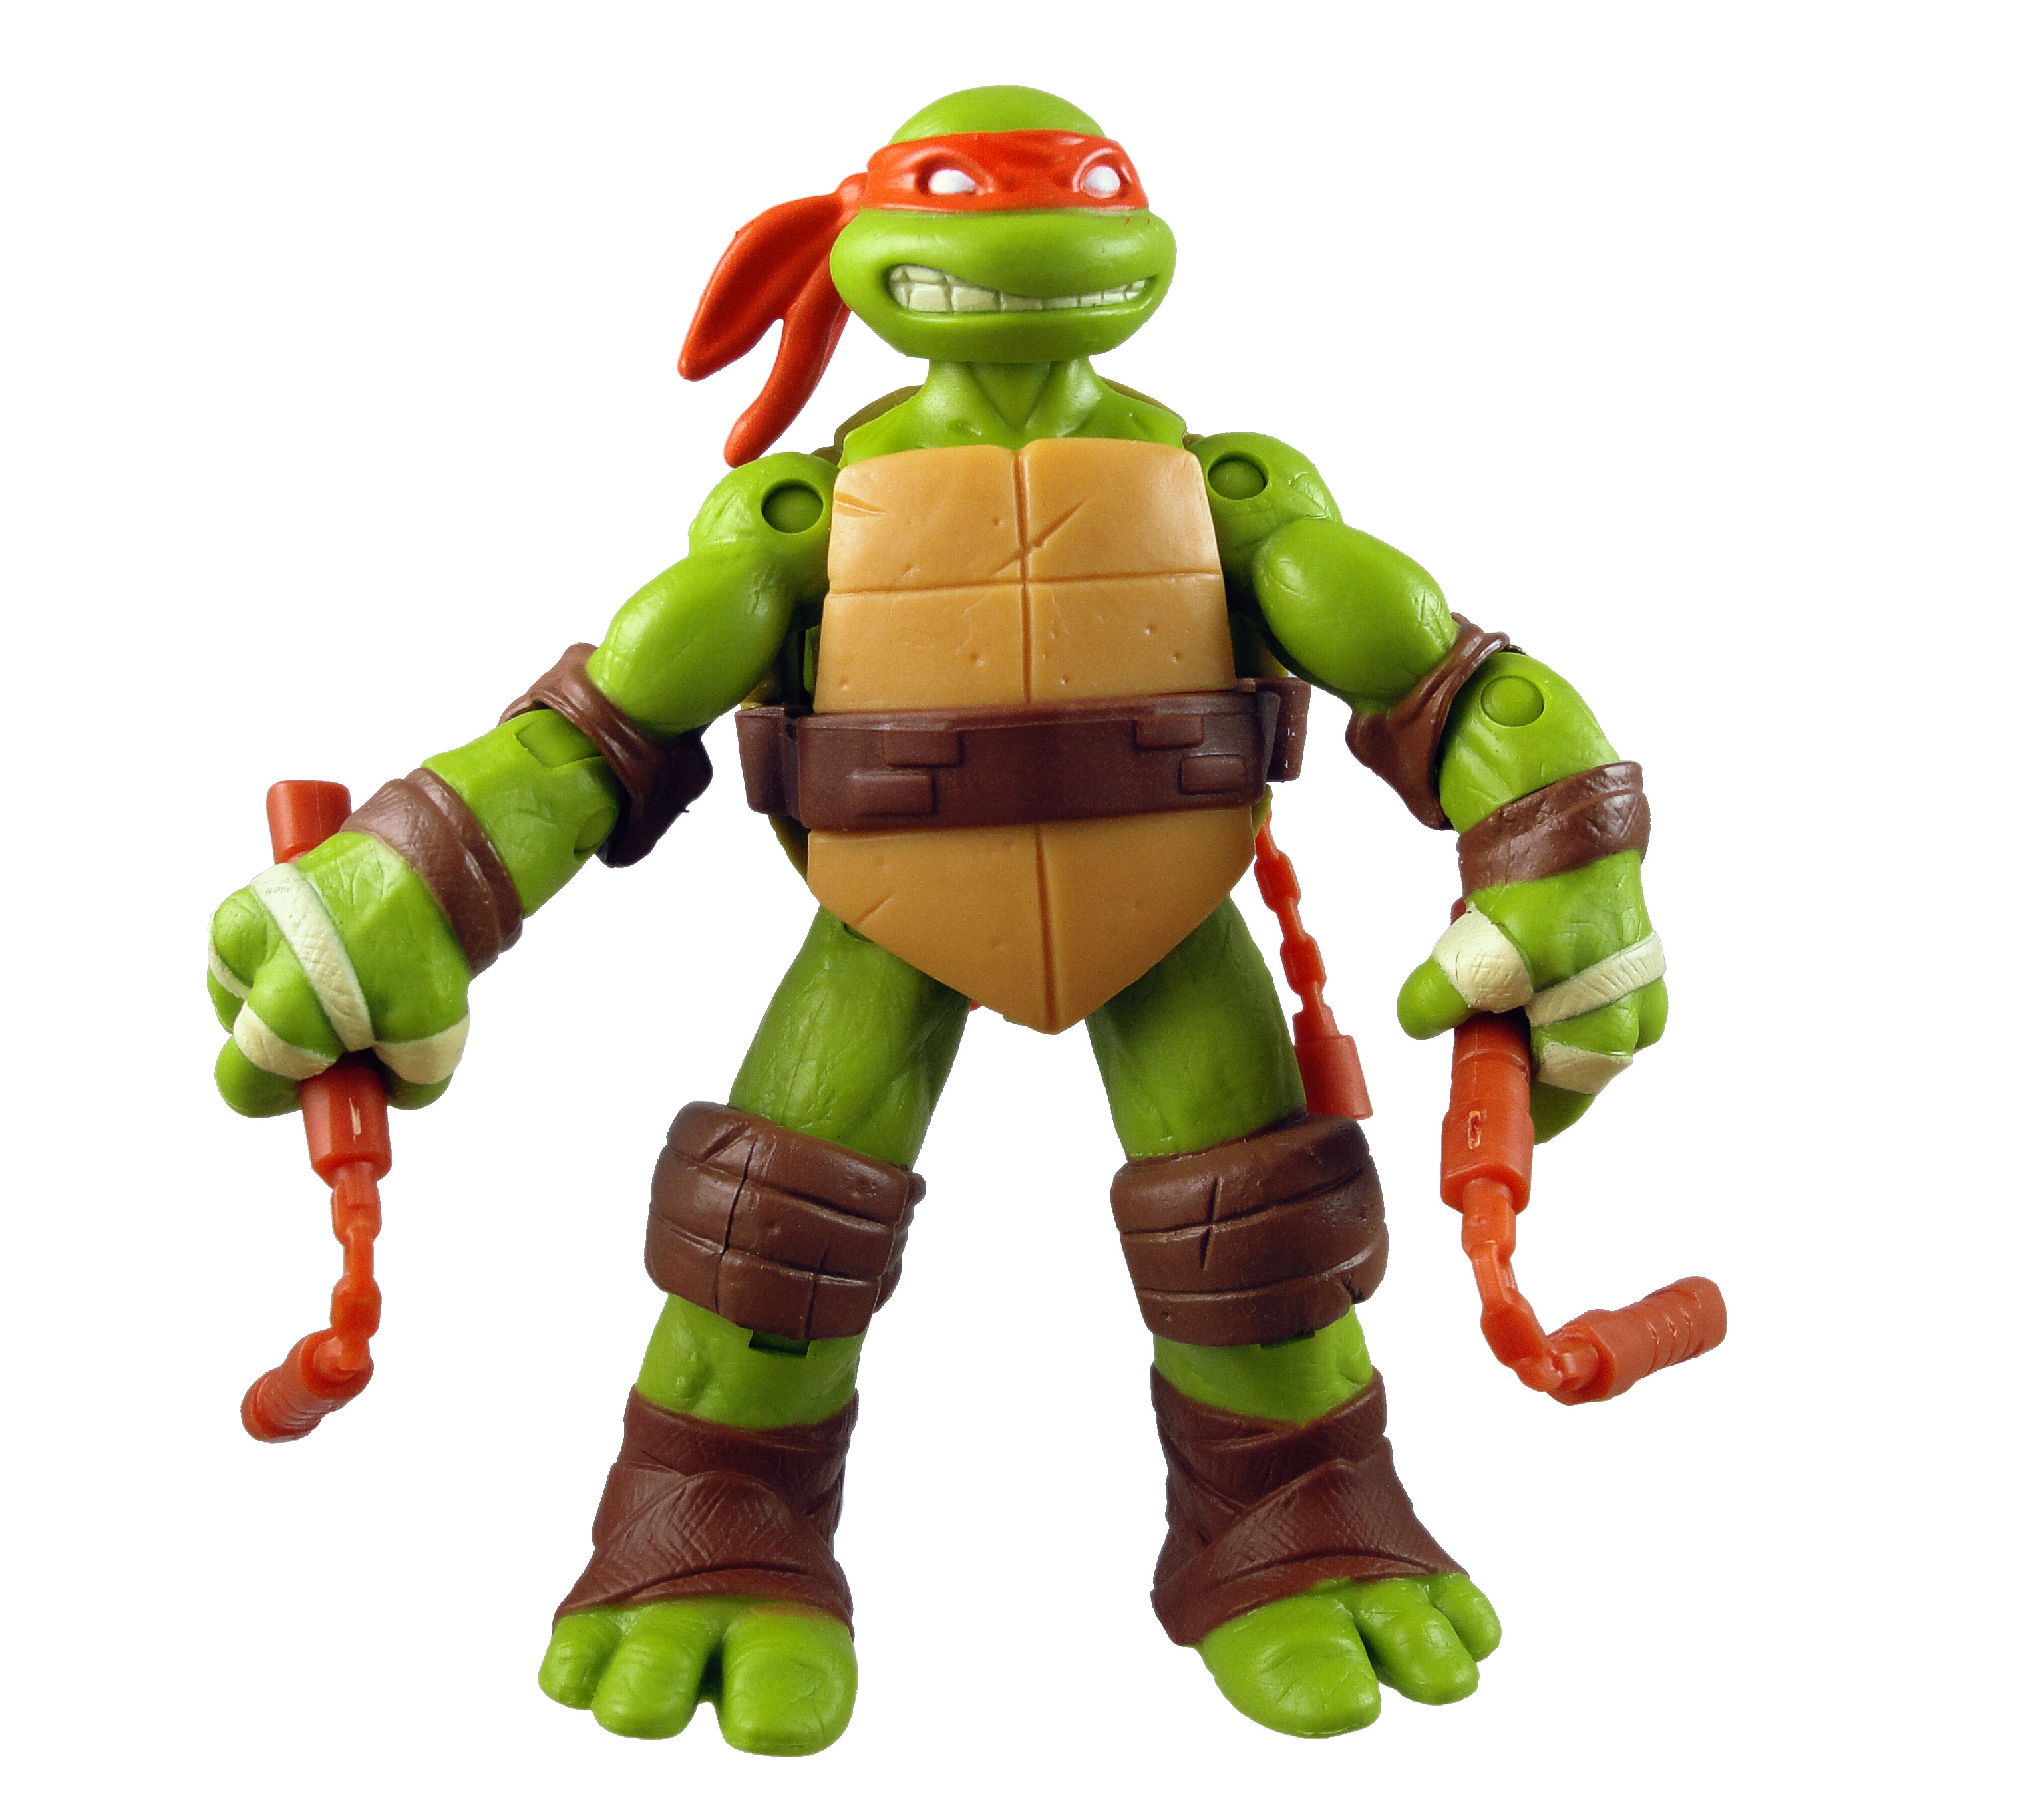 Review – Teenage Mutant Ninja Turtles Michelangelo